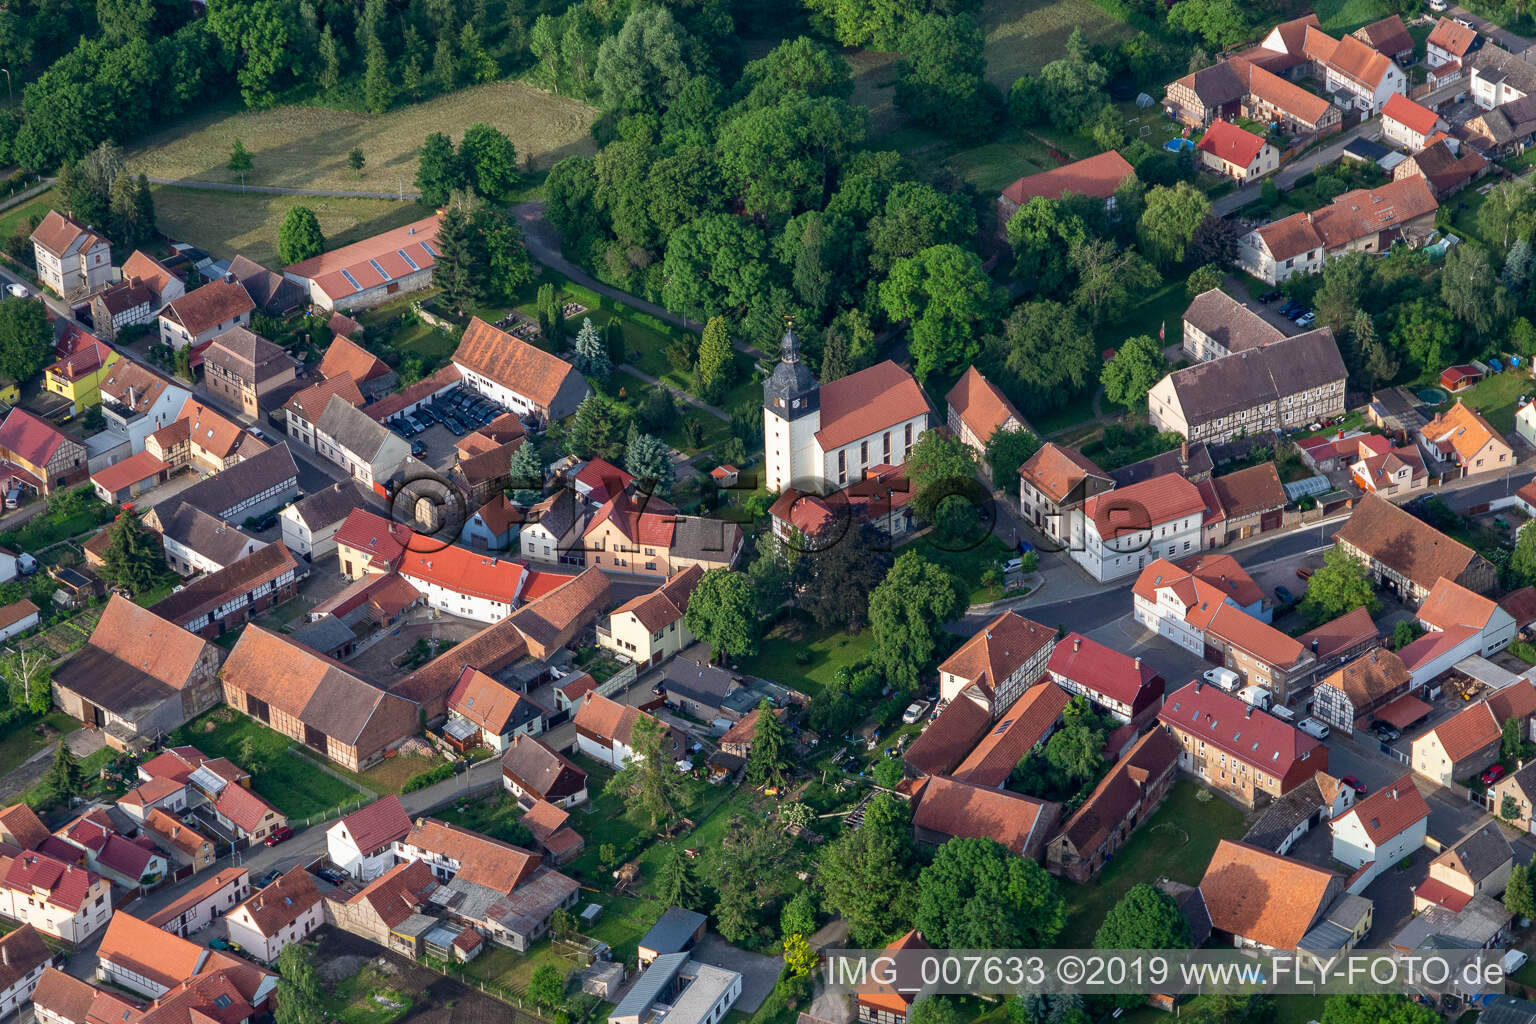 Vue aérienne de Église Saint-Guy au centre du village à Brüheim dans le département Thuringe, Allemagne